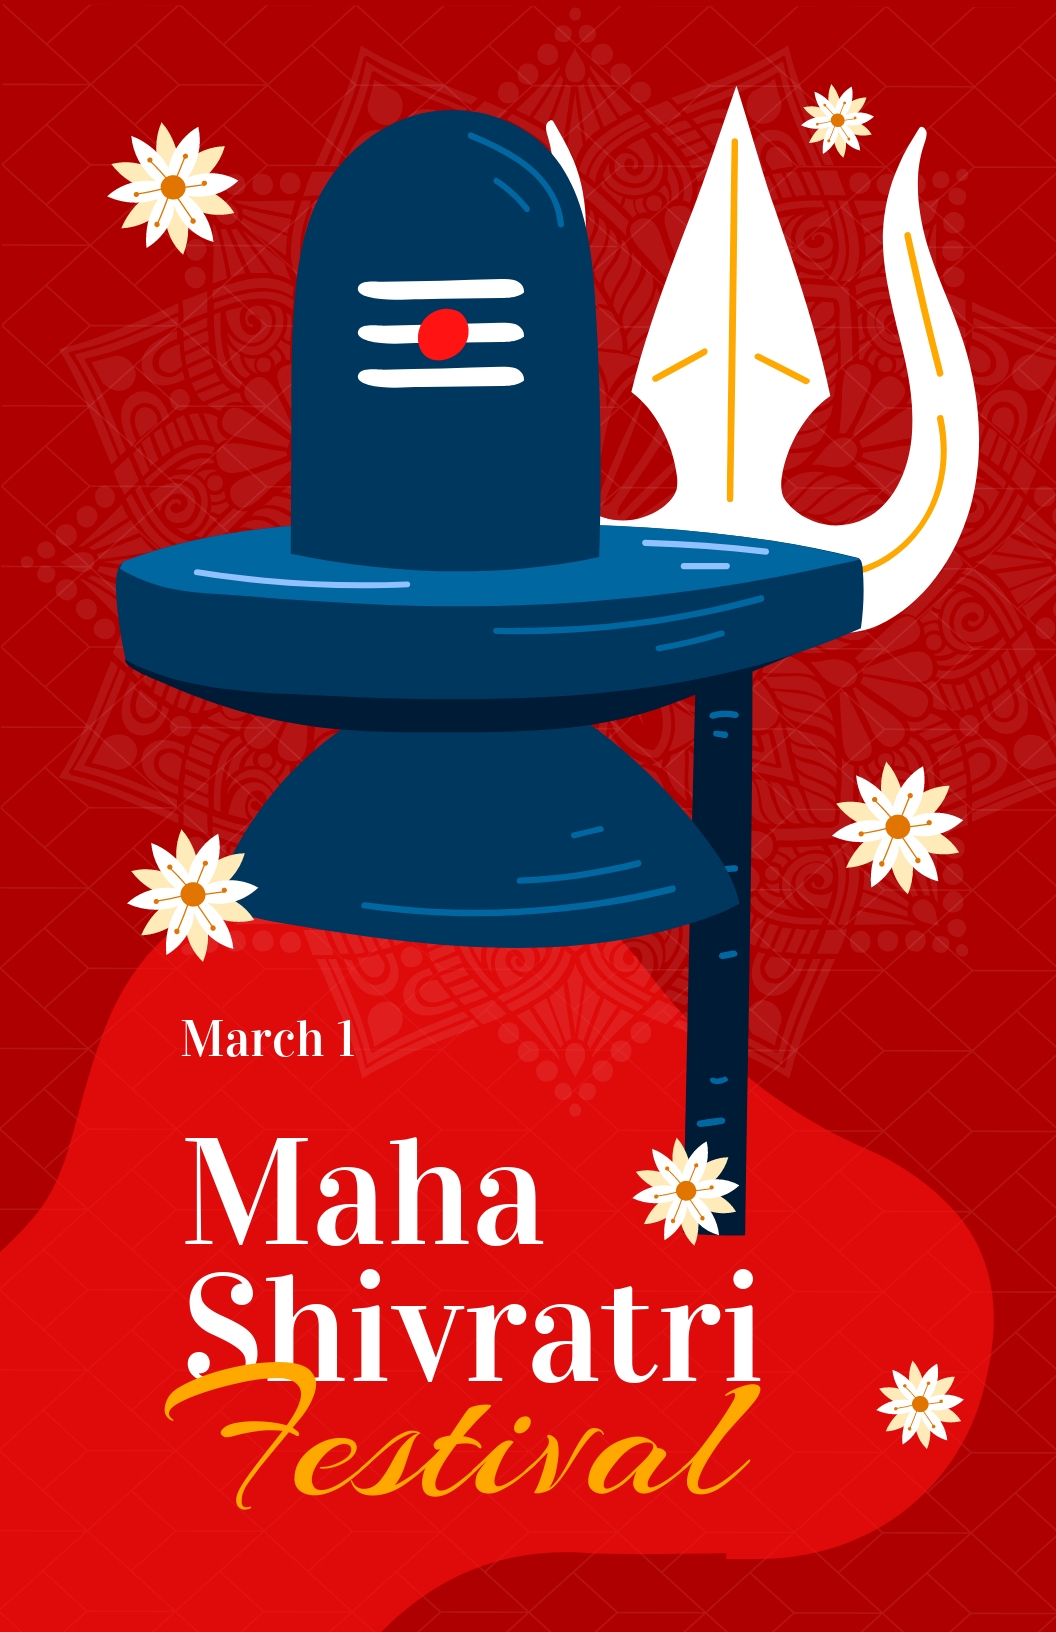 Maha Shivratri Festival Poster Template